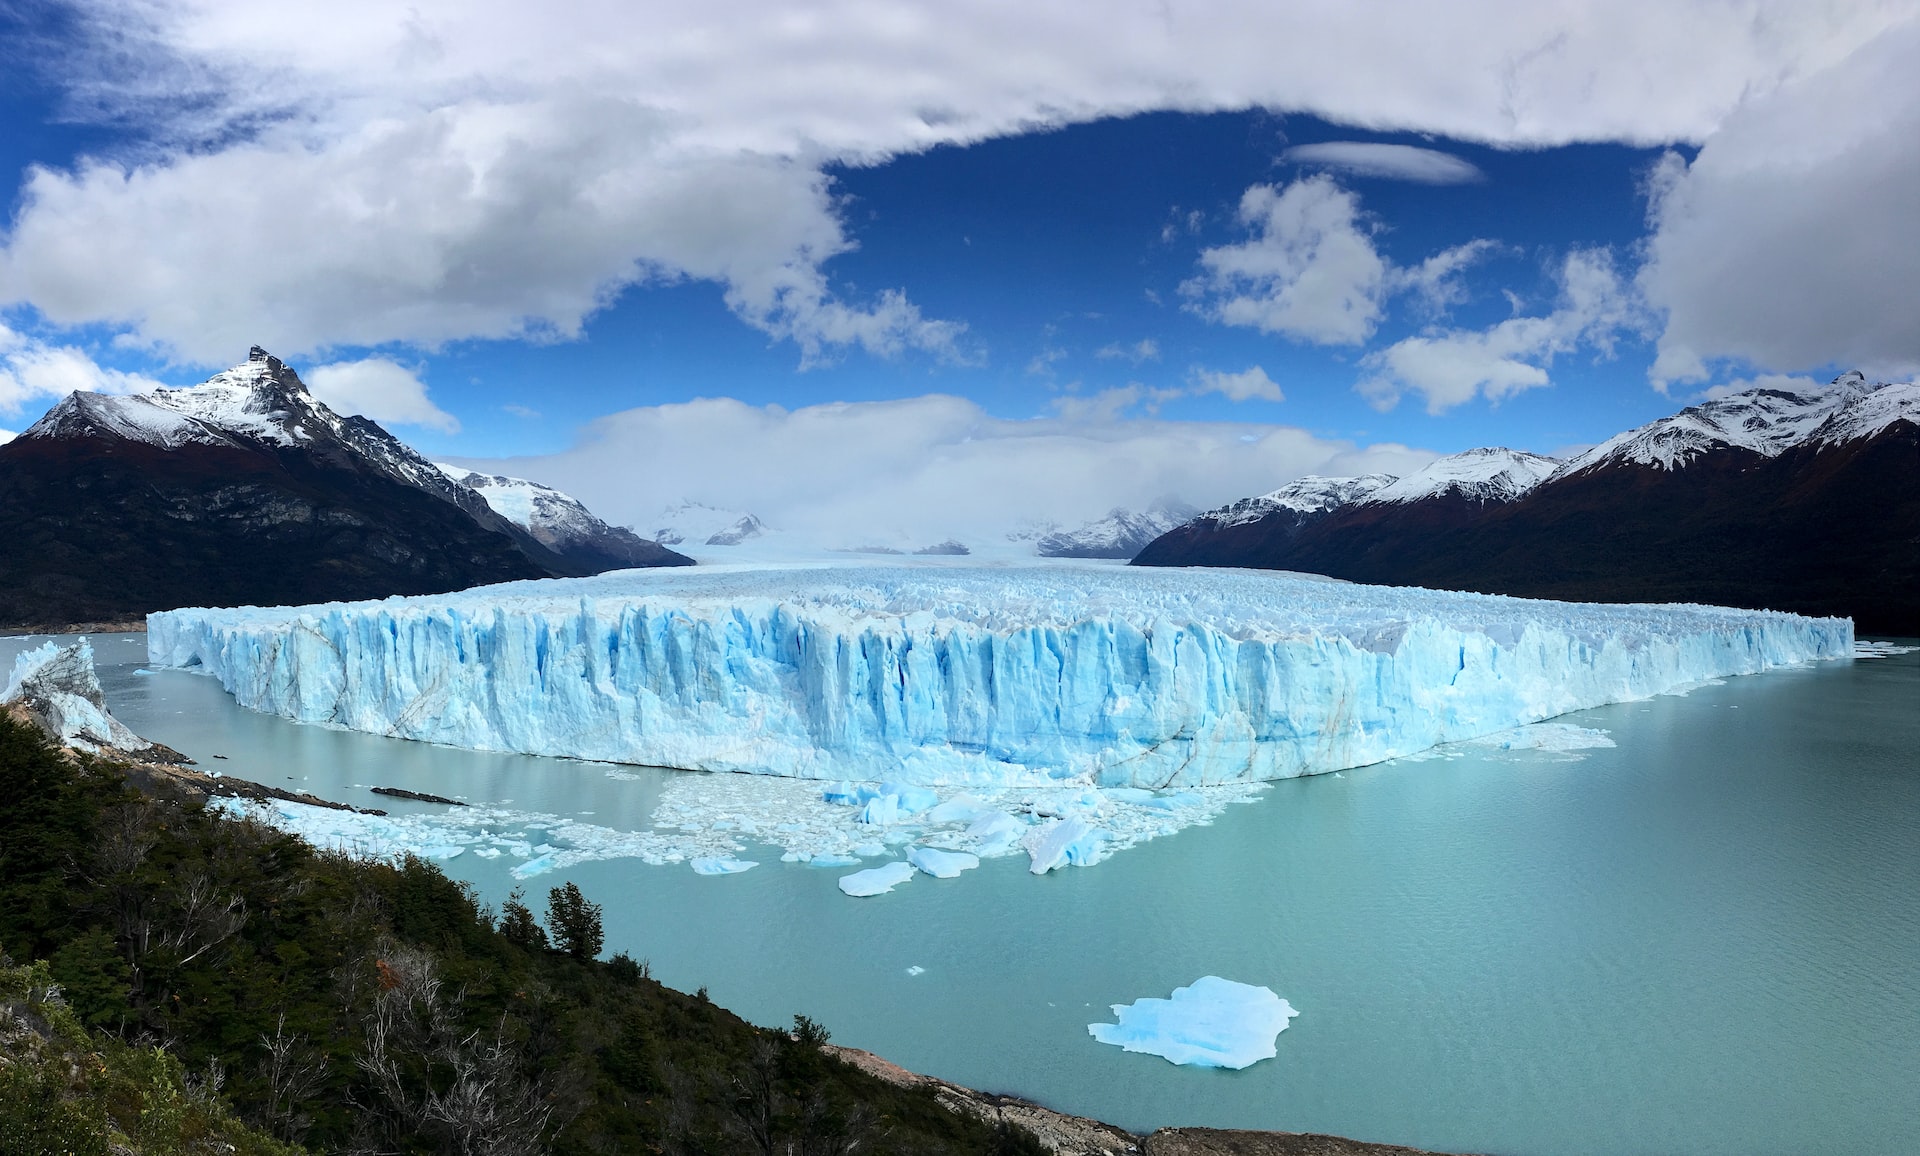 The Perito Moreno Glacier in Argentina.